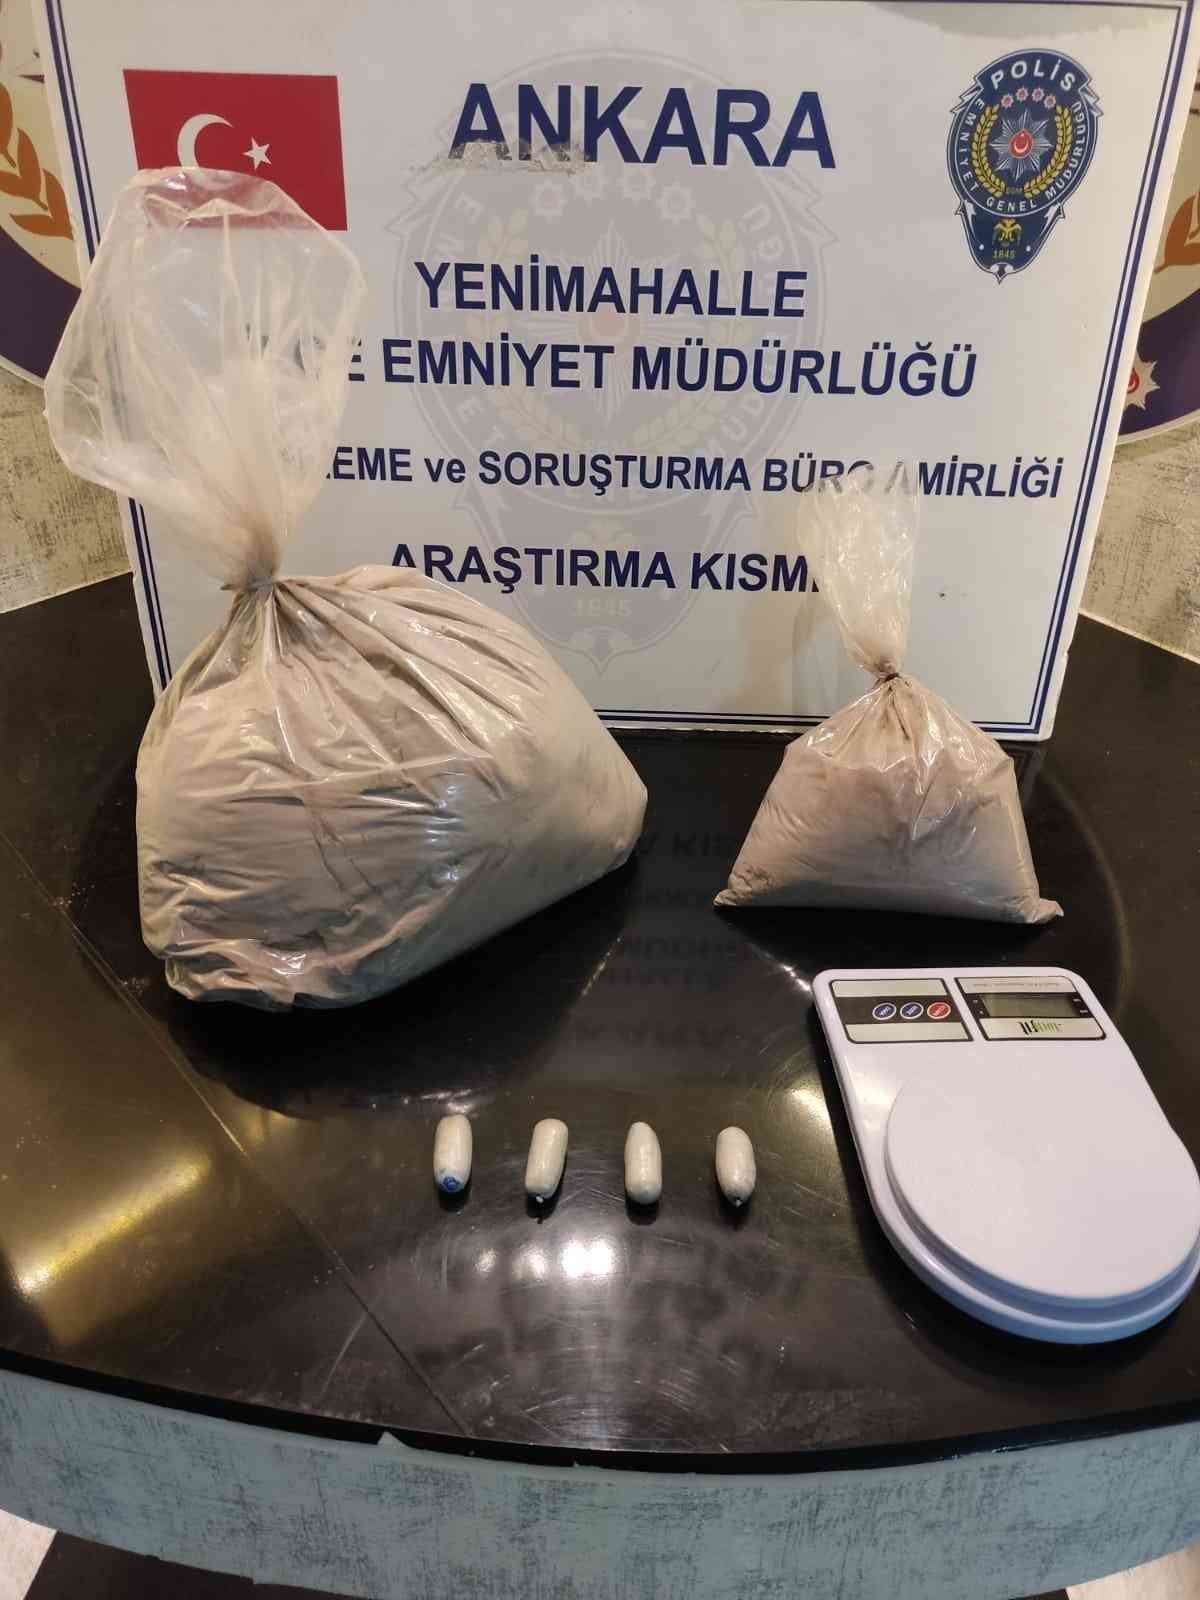 Ankara’da sindirim ve boşaltım sistemlerinden 800 gram uyuşturucu madde çıkarılan 2 yabancı uyruklu gözaltına alındı #ankara